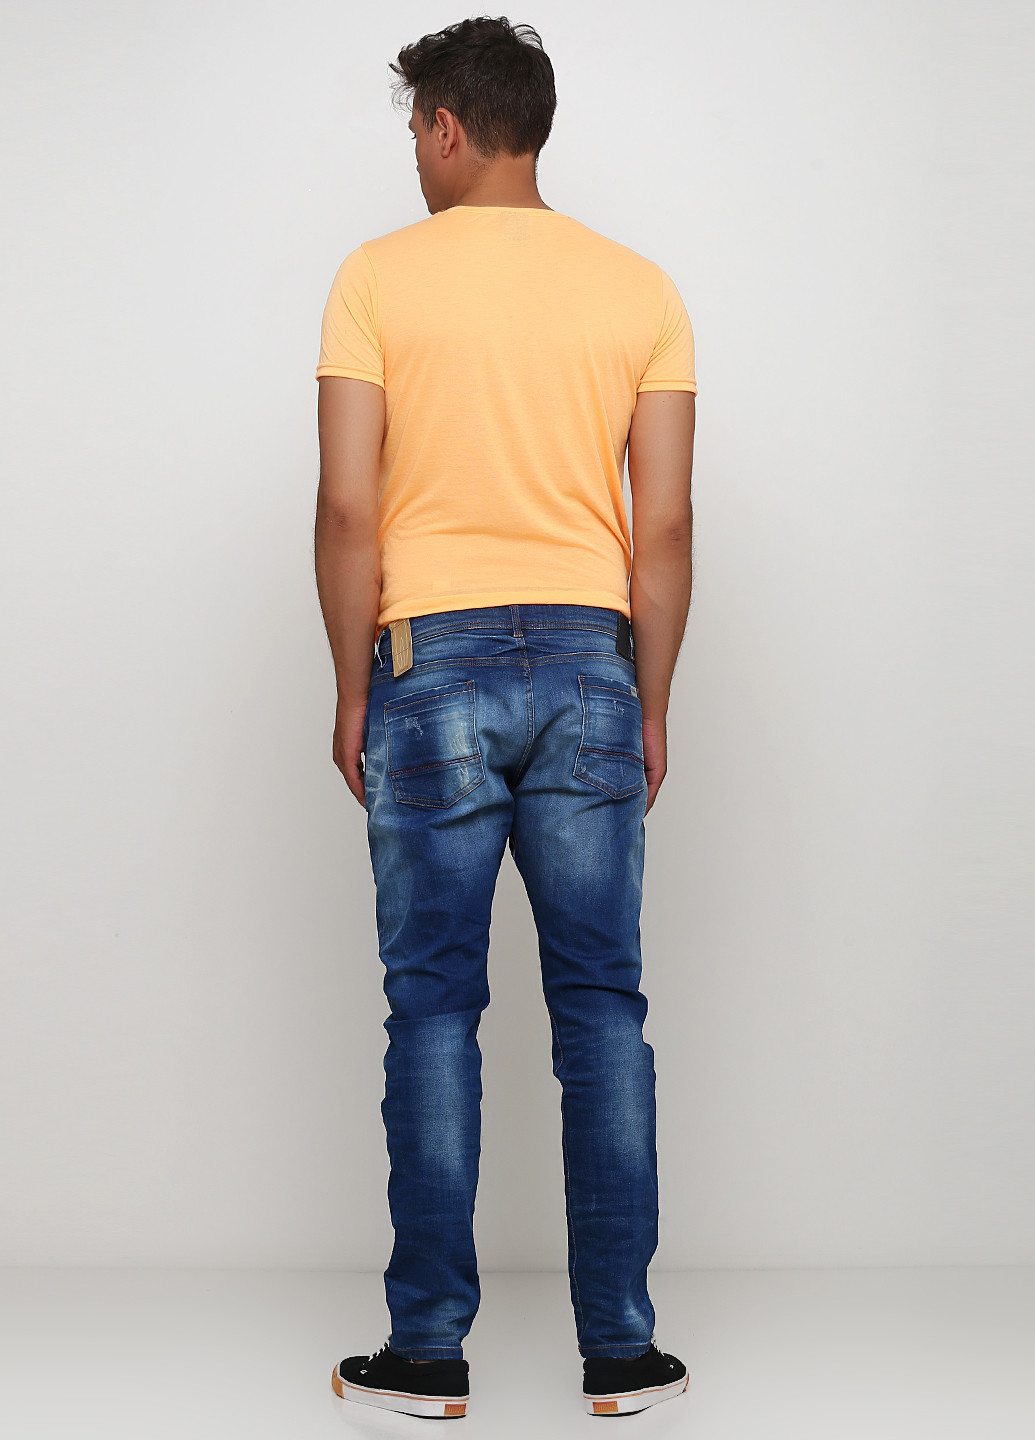 Синие демисезонные прямые джинсы Piazza Italia